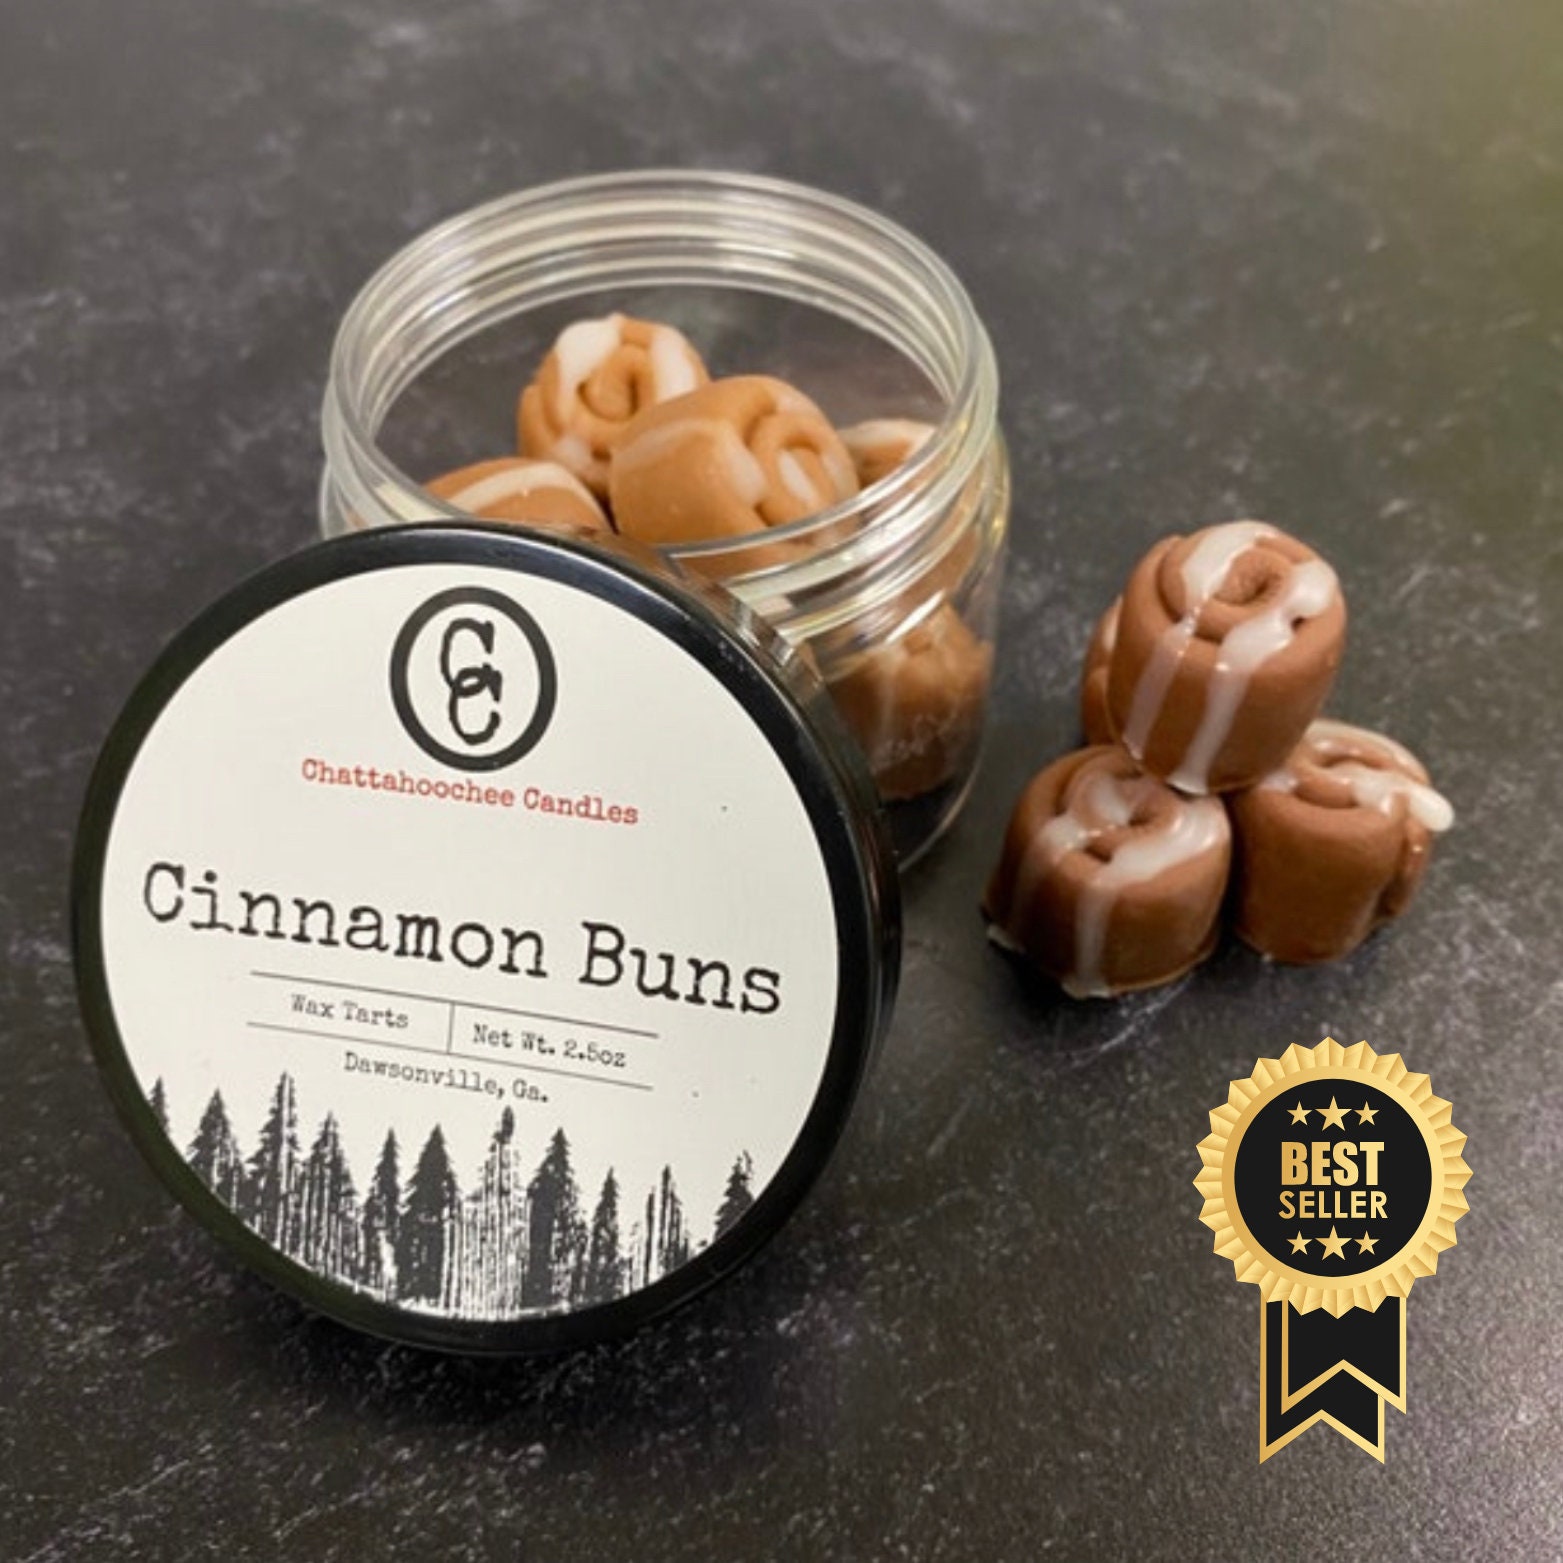 Cinnamon Buns Soy Wax Tarts Food Wax Melts / Food Shapes / Cinnabon /  Cinnamon Rolls/ Novelty / Mini Buns / Soy Wax Melts 2.5oz 